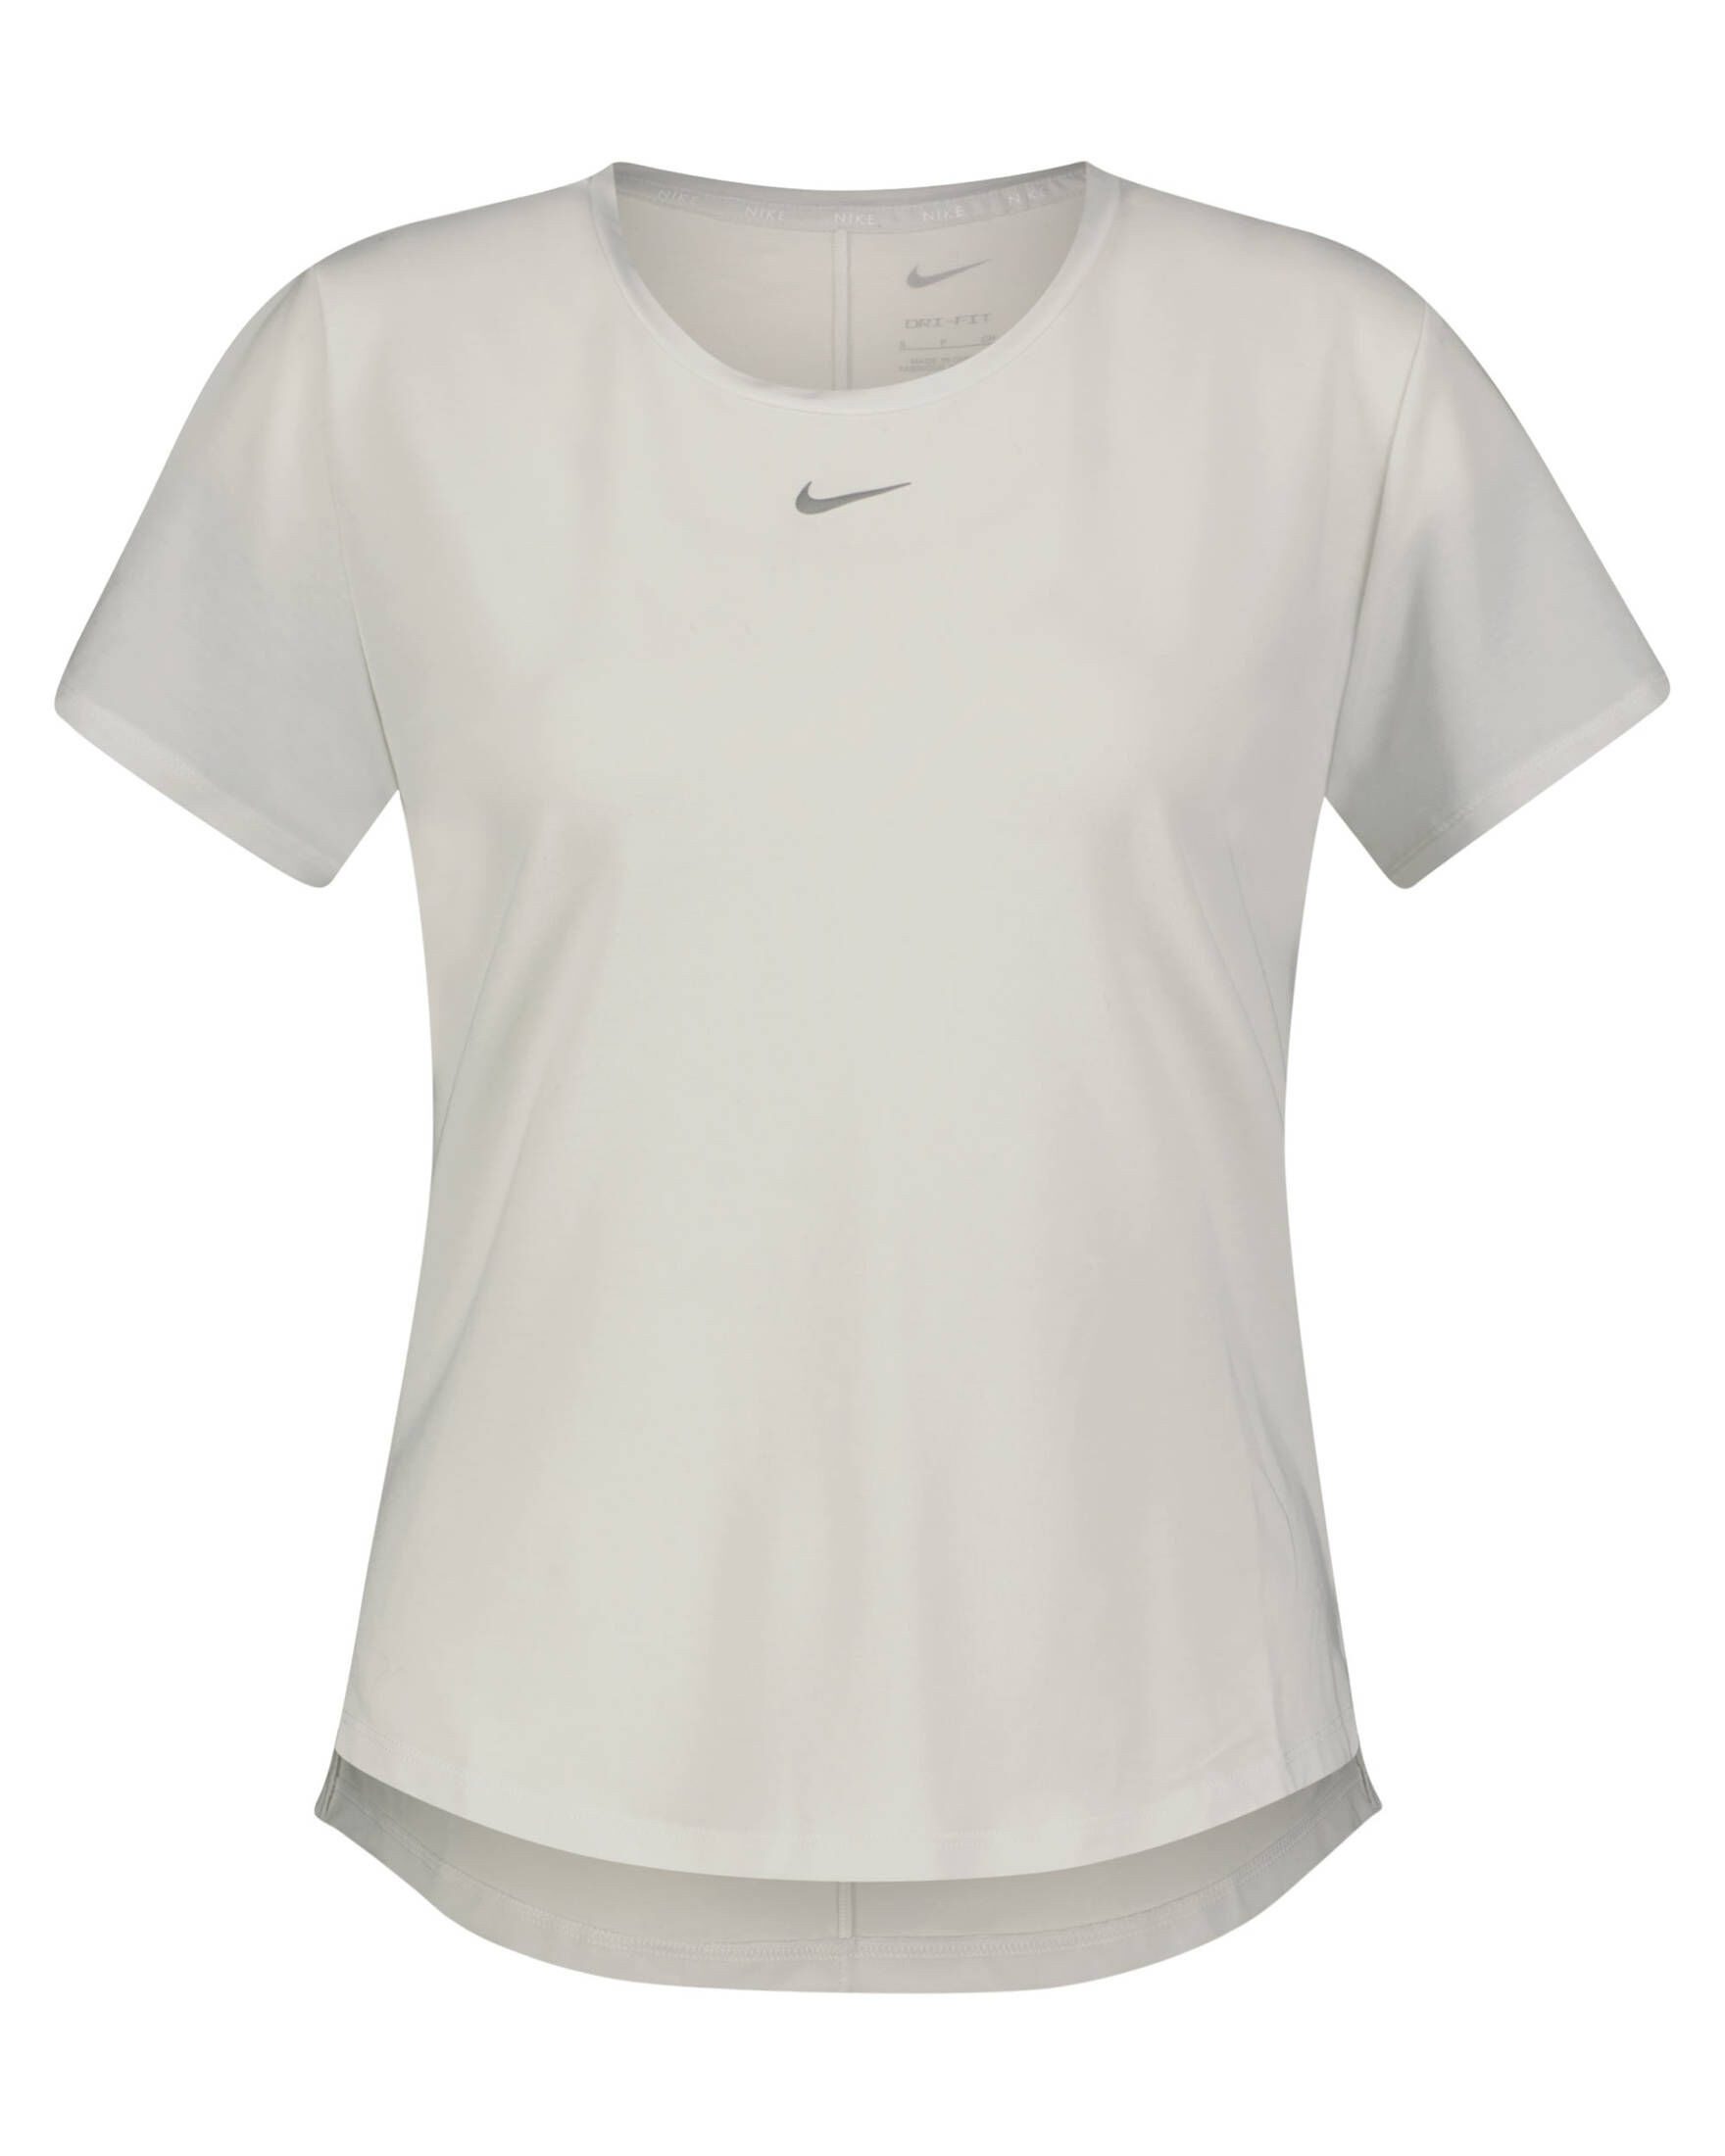 Nike Tennisshirt Damen T-Shirt ONE LUXE